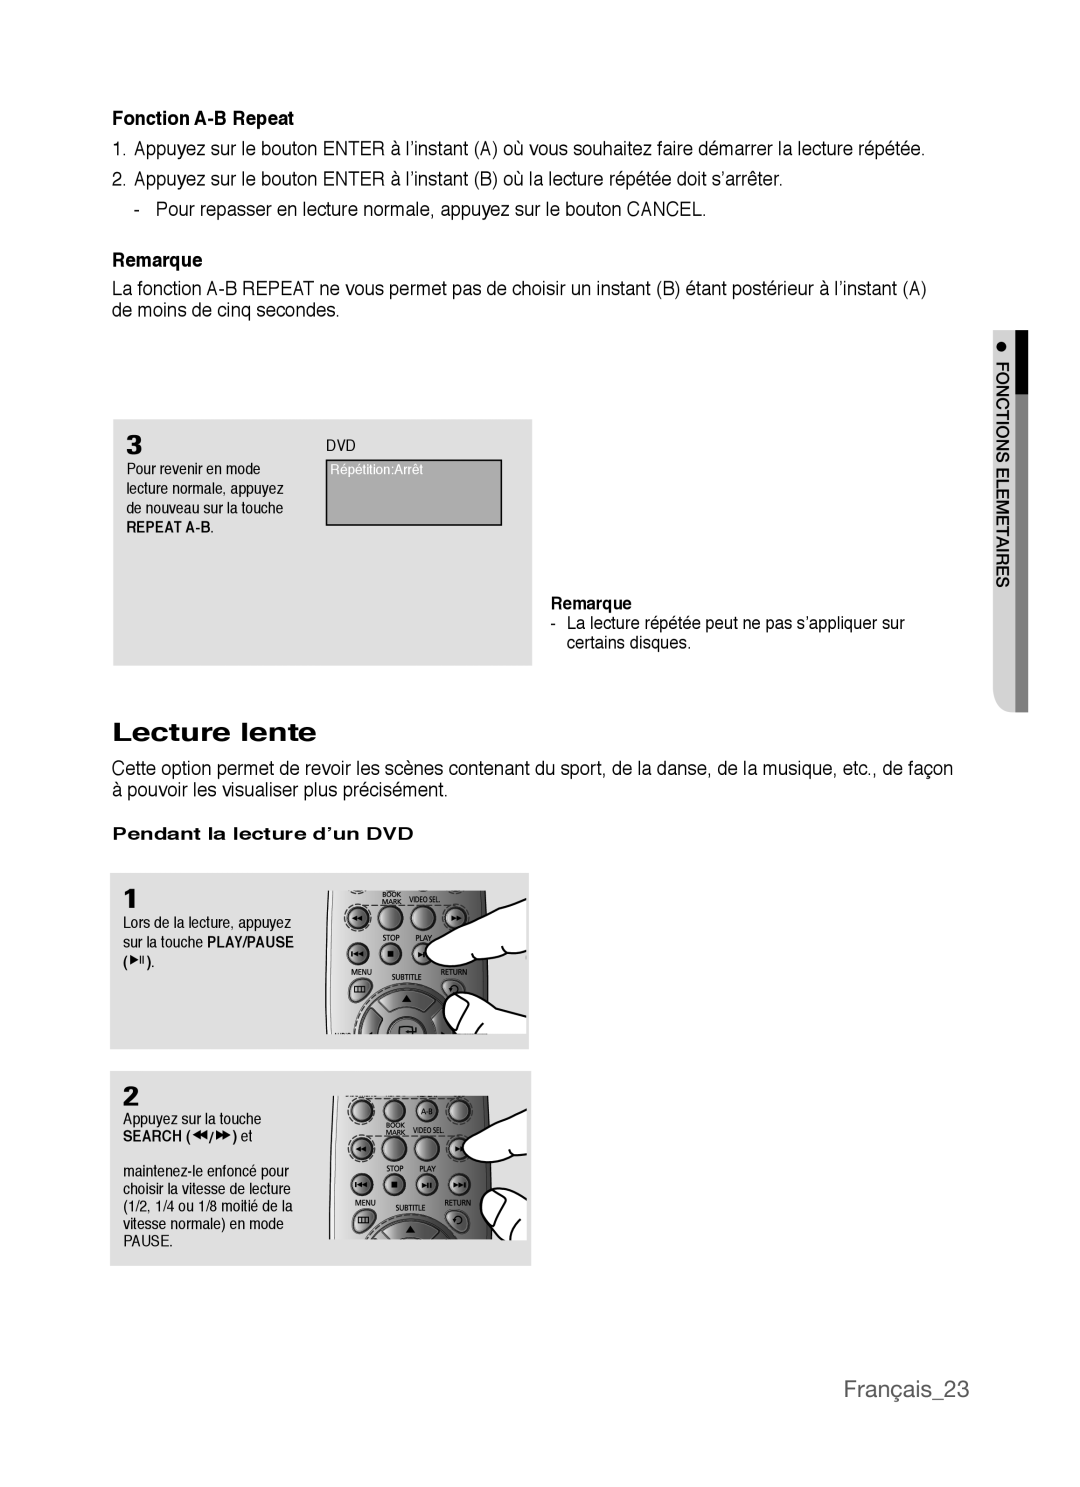 Samsung AK68-01770G, DVD-P390 user manual Lecture lente, Français23, Fonction A-B Repeat, Remarque 